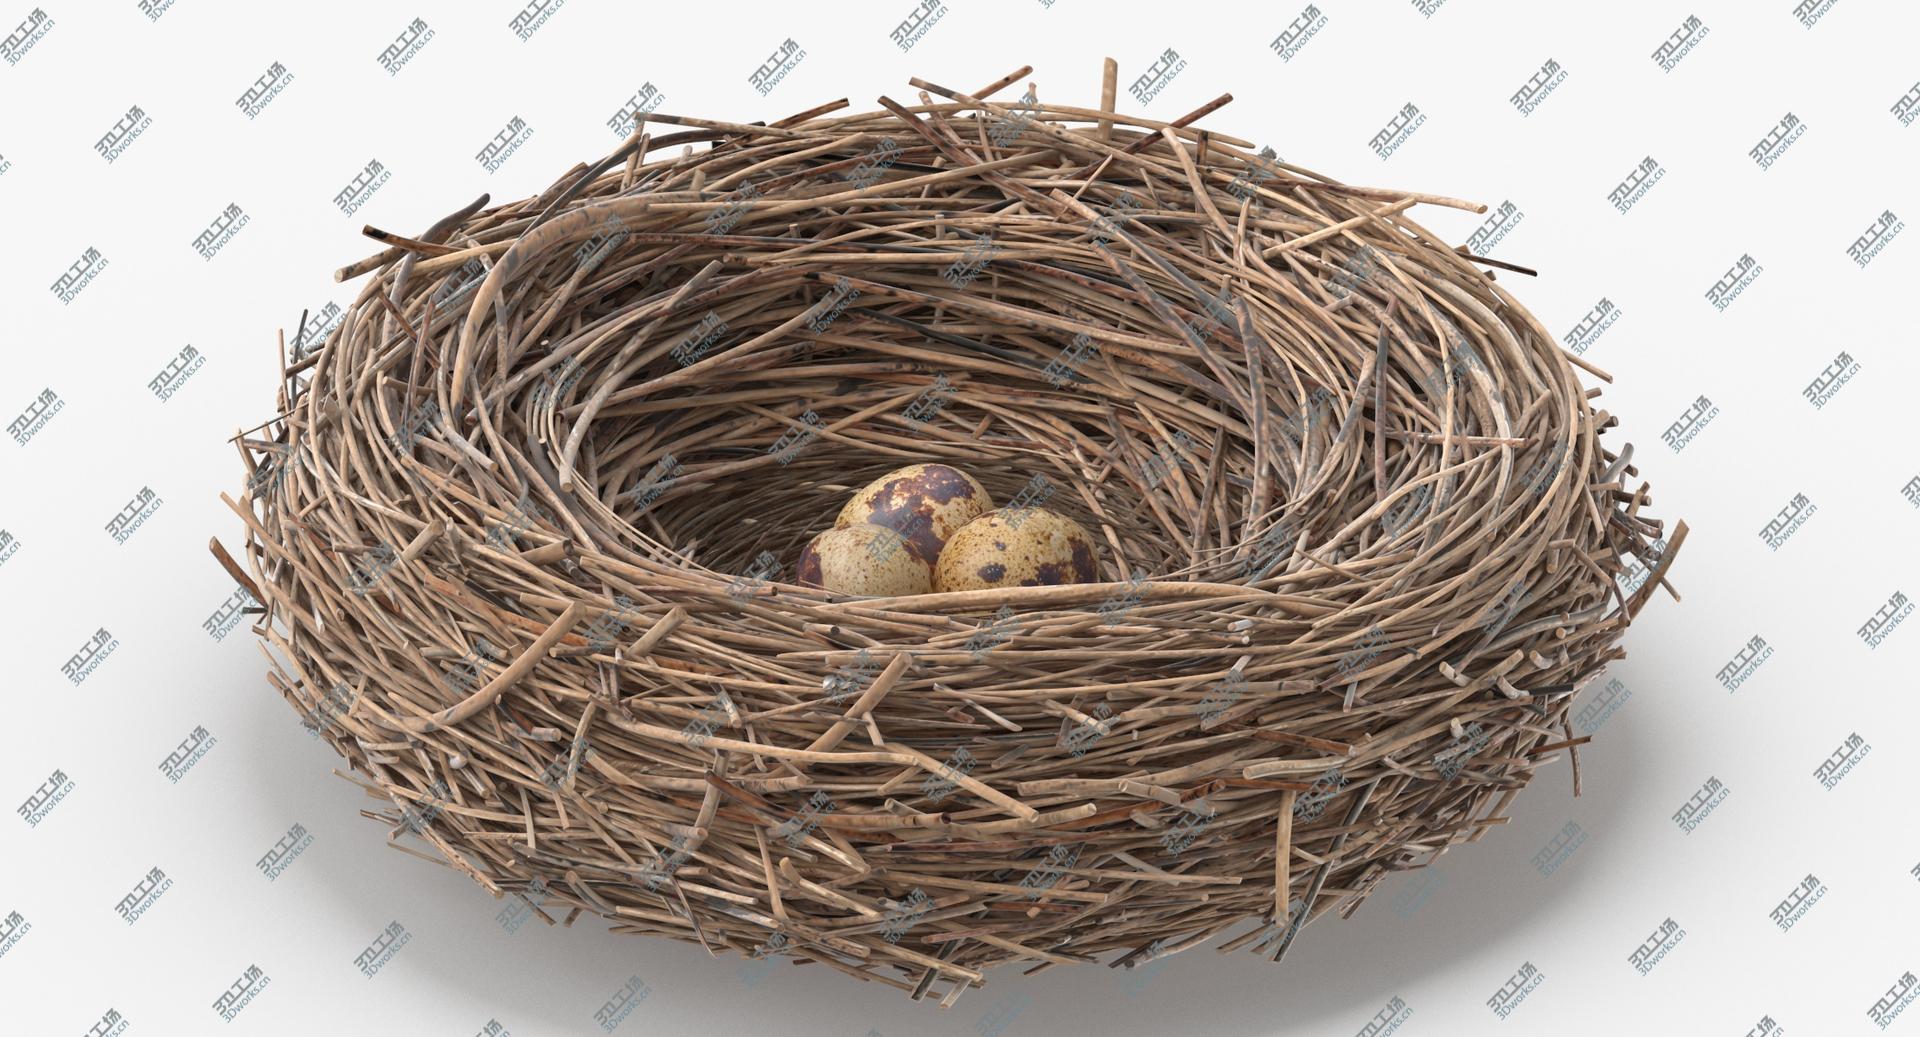 images/goods_img/2021040162/3D Bird Nest 03 With Quail Eggs model/2.jpg